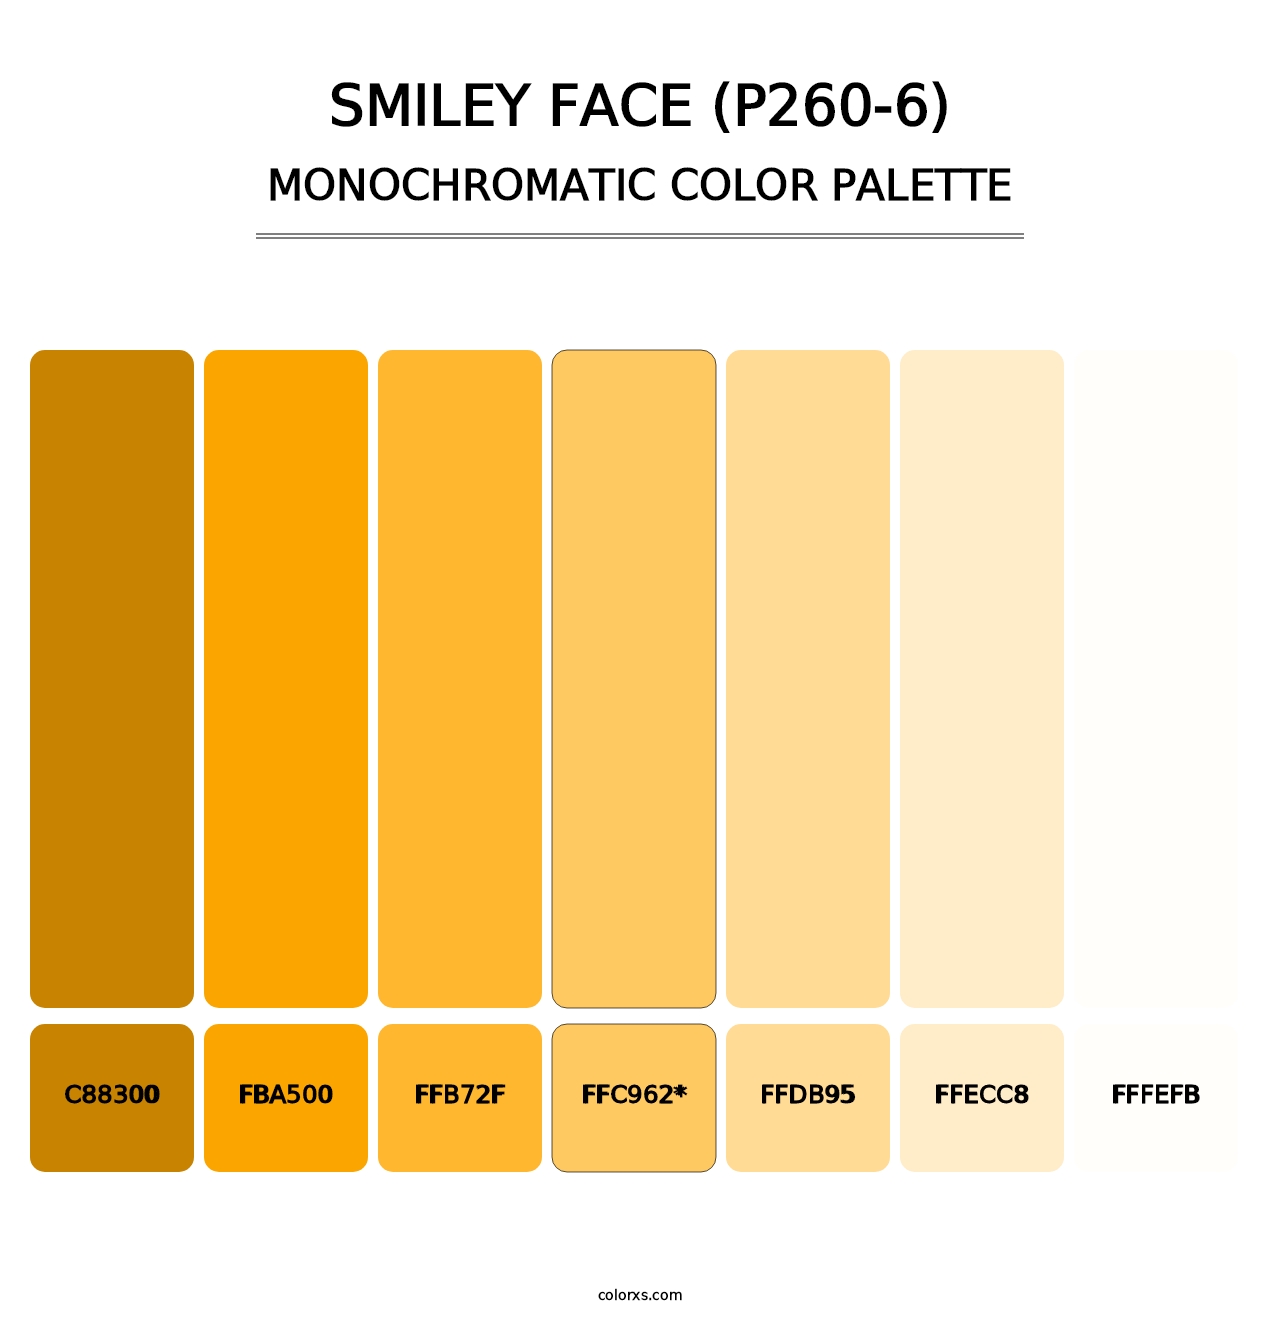 Smiley Face (P260-6) - Monochromatic Color Palette